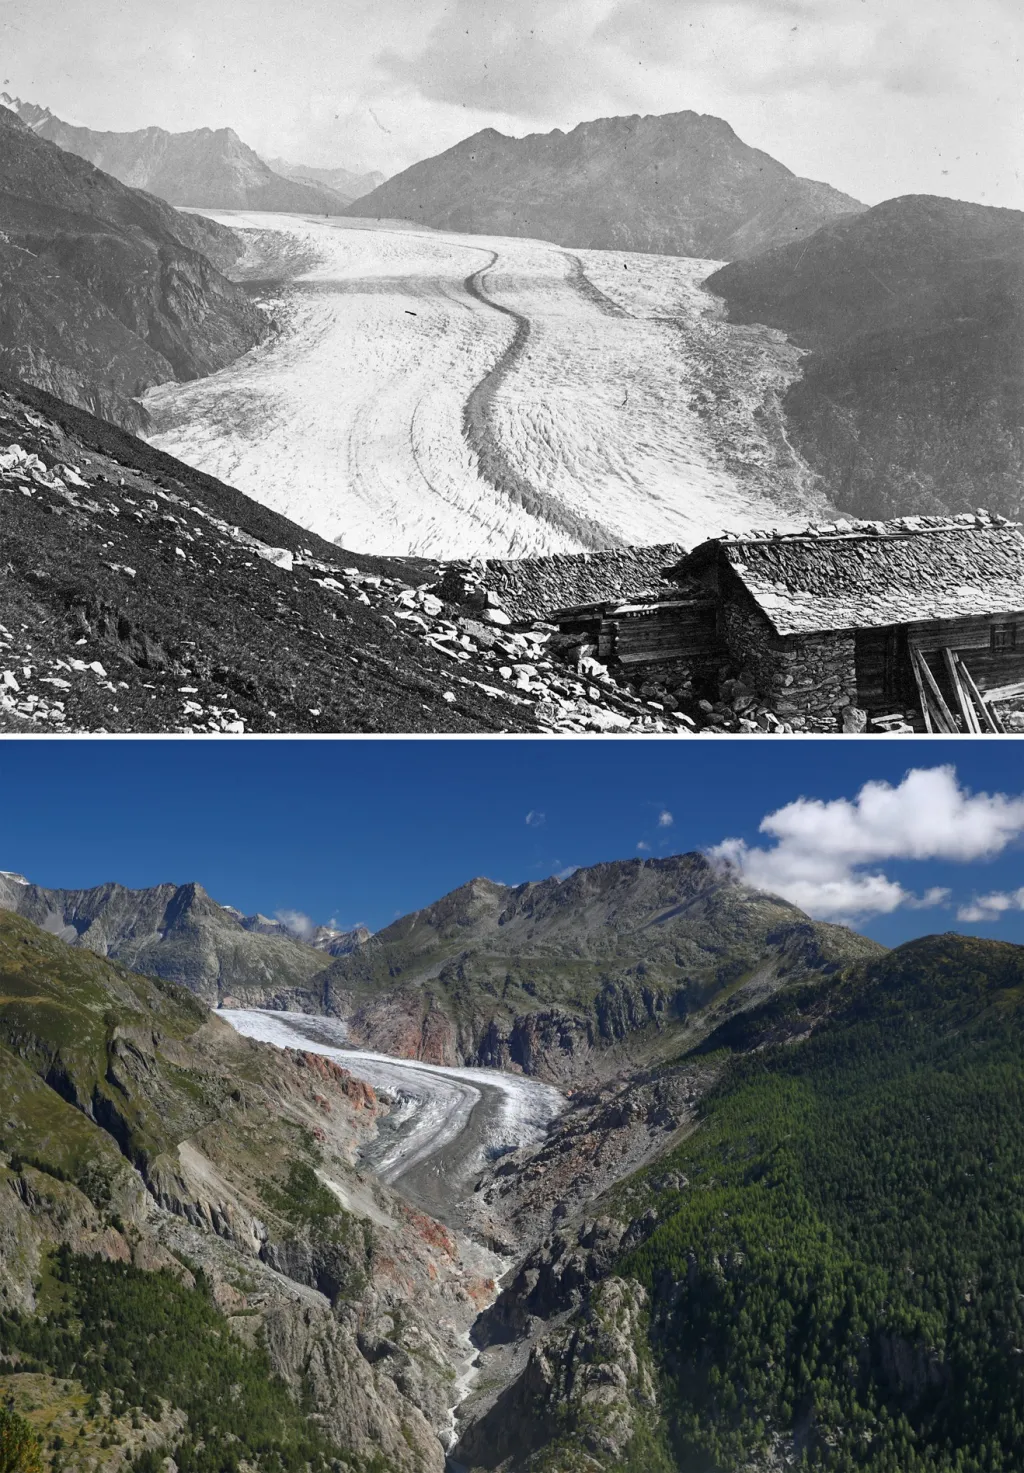 Ledovec Aletsch rovněž neubránil své hranice vlivu změn klimatu. Na fotografii z roku 1865 je ledovec v plné síle proti fotografii z října 2019